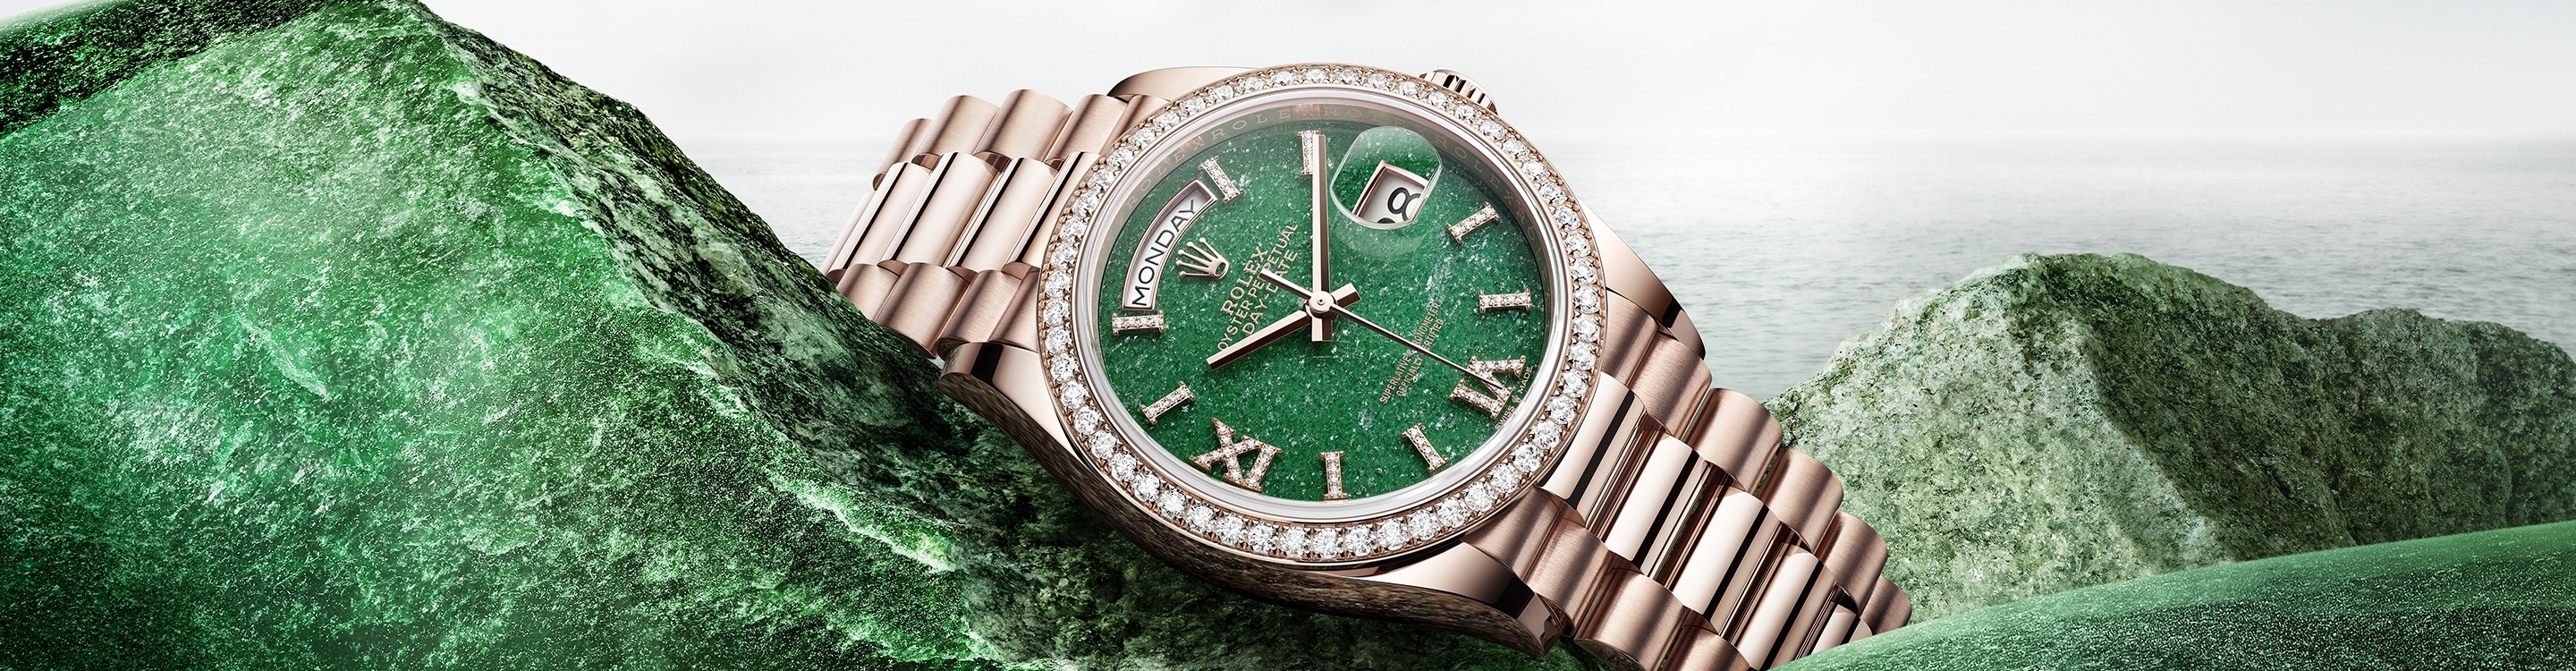 Rolex Day-Date腕錶金款，M228235-0025 | 歐洲坊